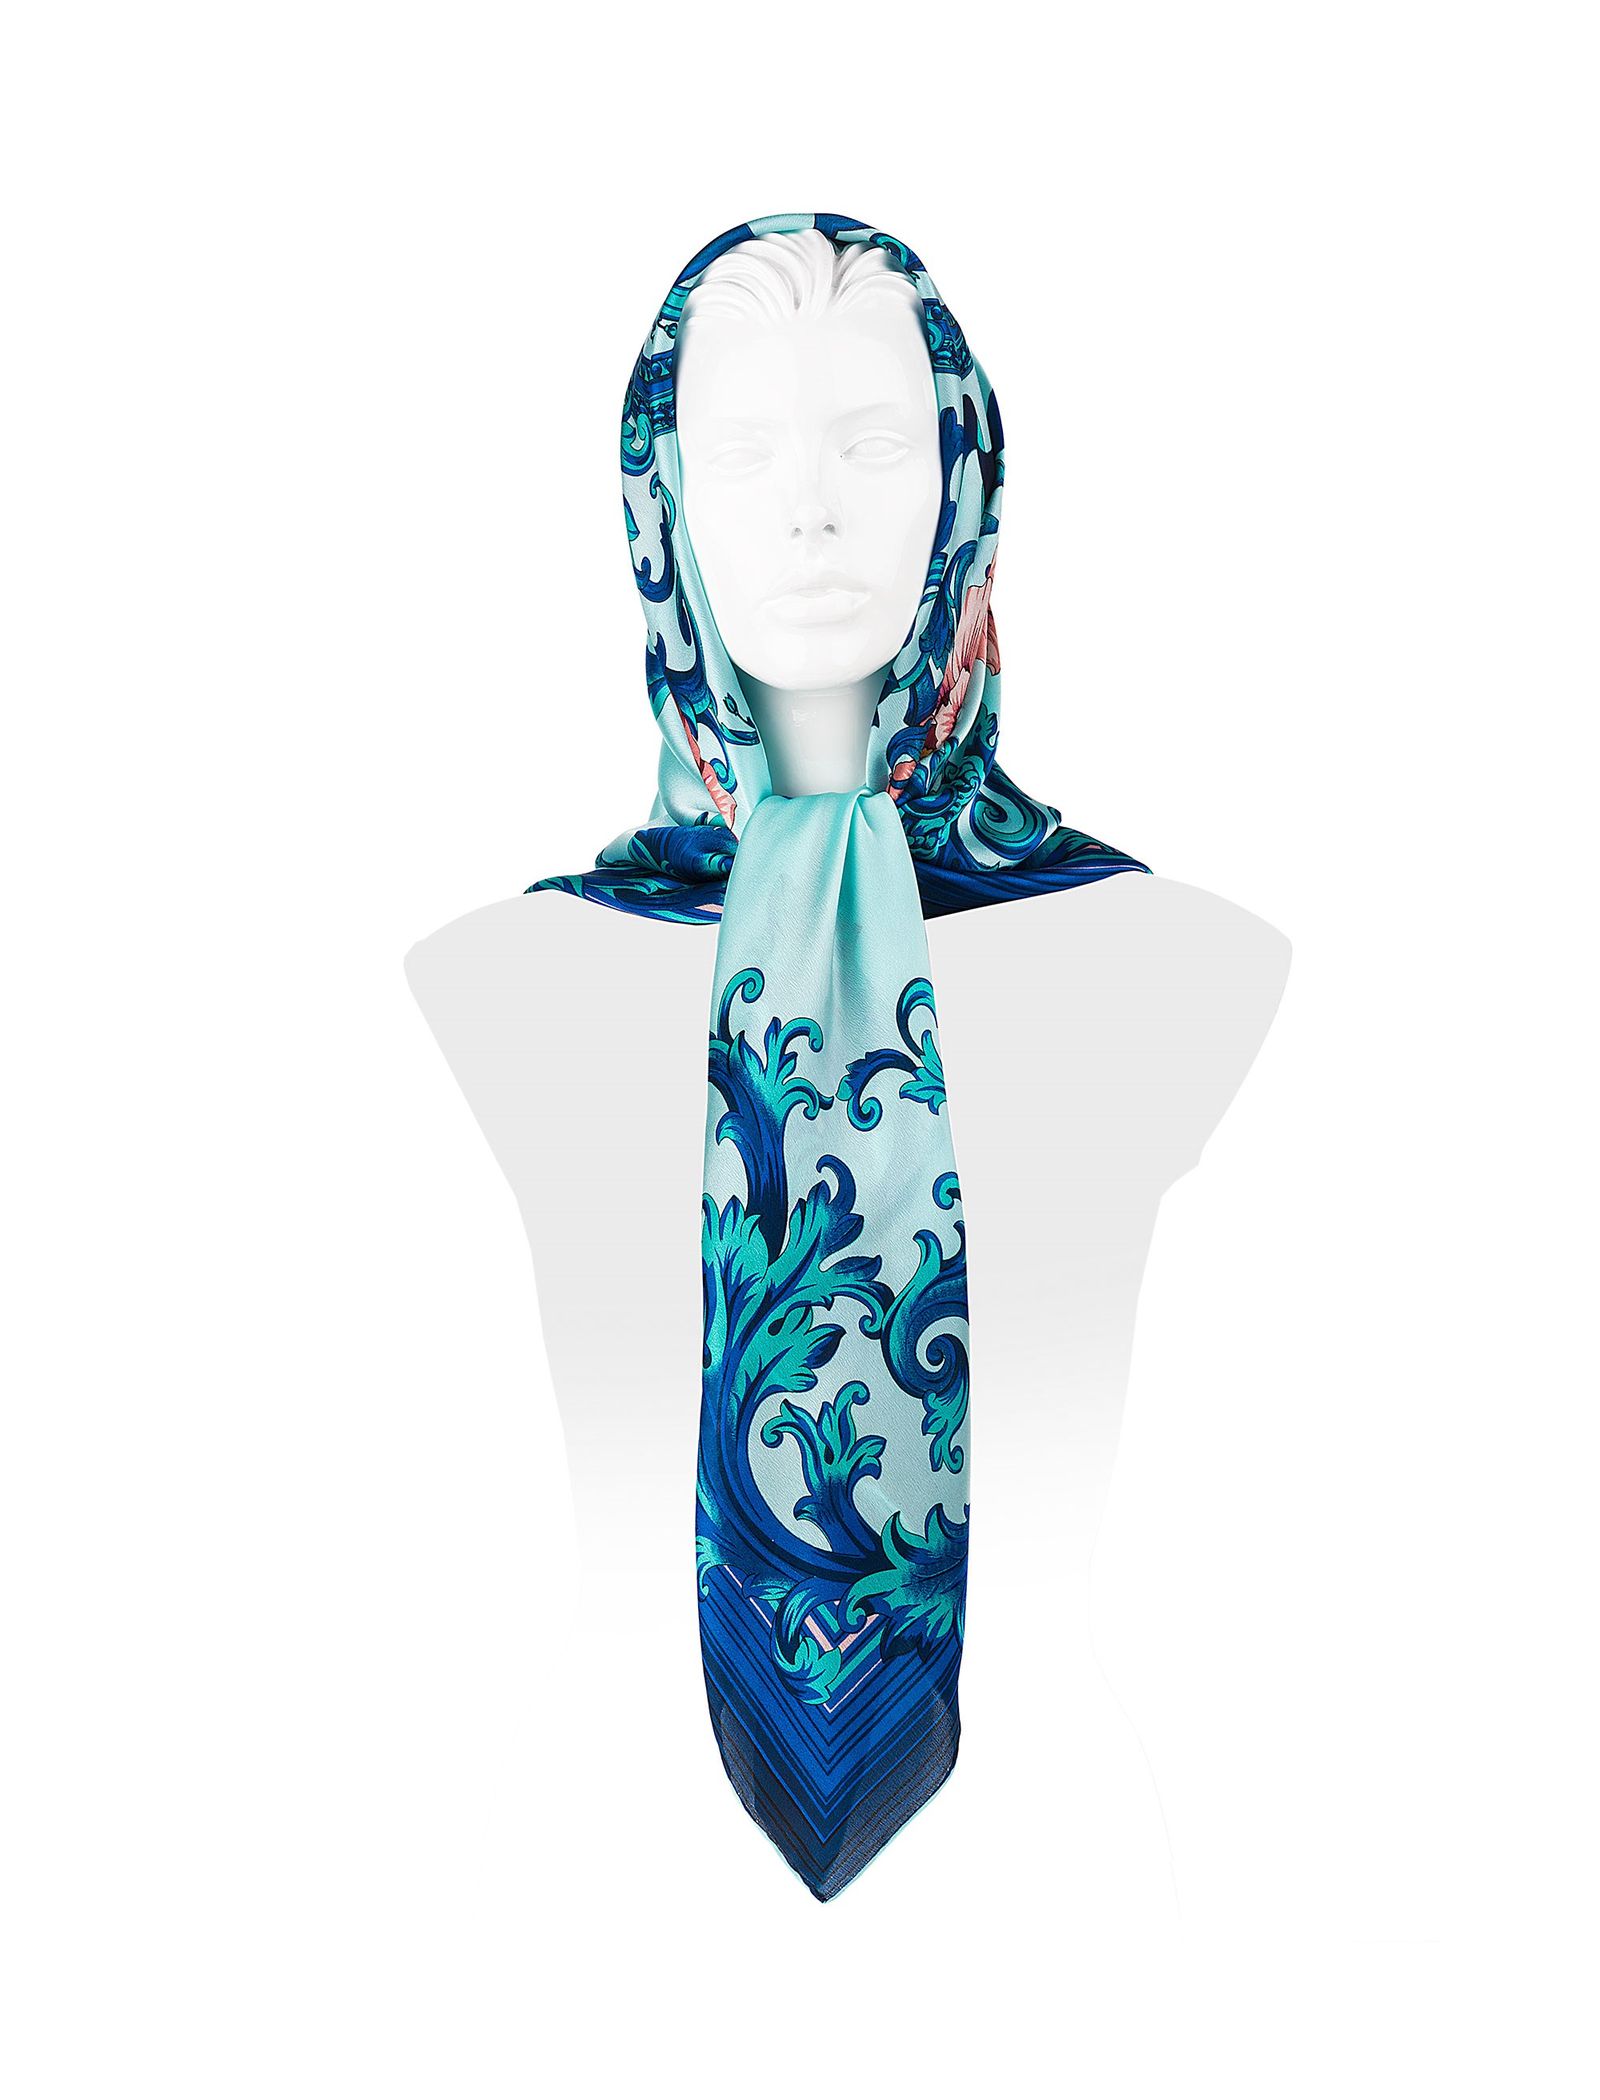 روسری ابریشمی زنانه - رزتی - آبي روشن - 4